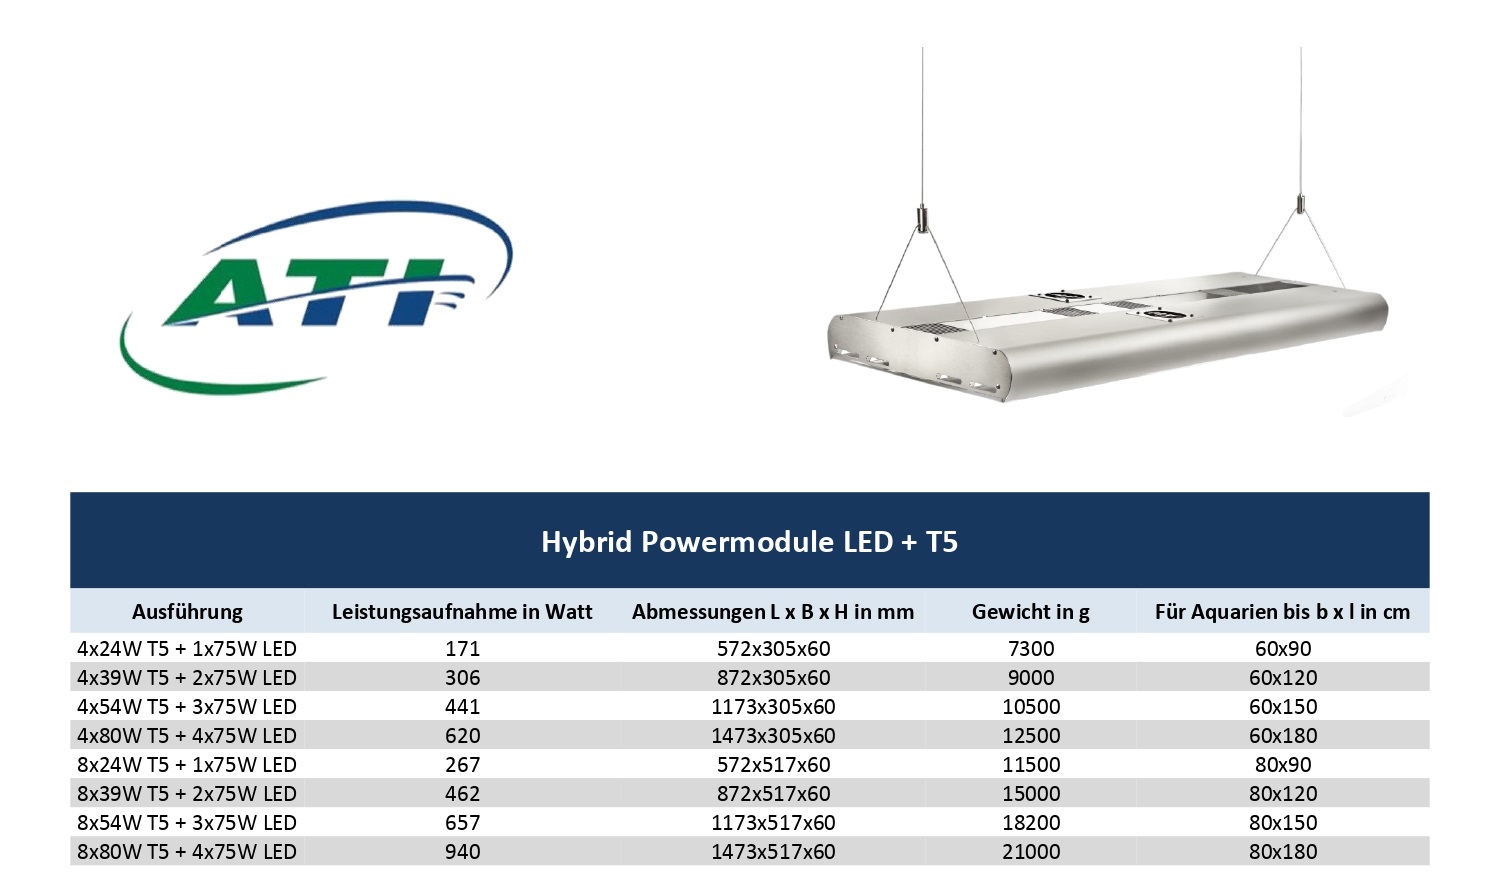 ATI Hybrid LED-Powermodul 4x39 Watt T5 + 2x75 Watt LED WiFi (1010001) weiss